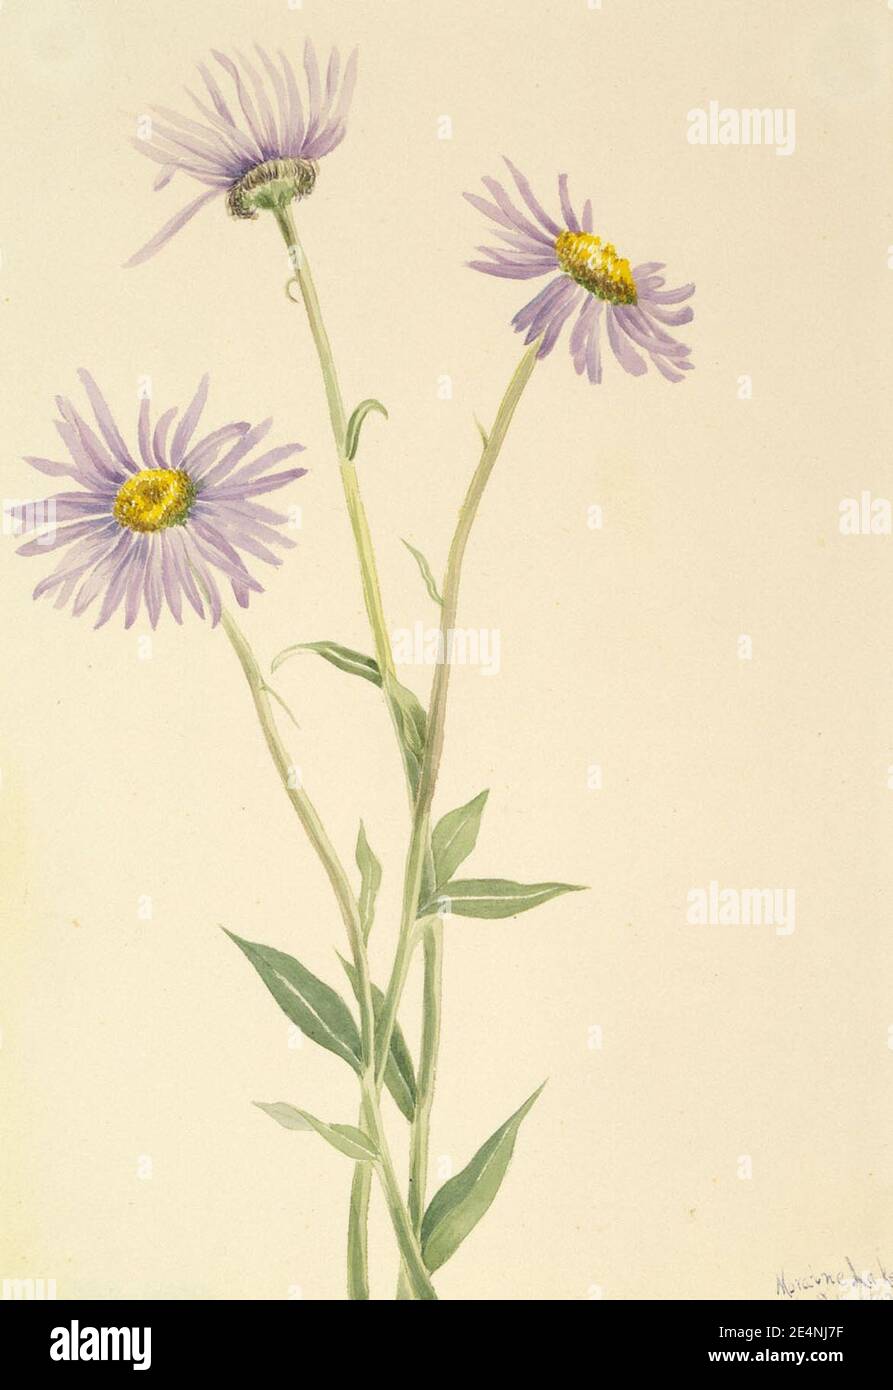 Mary Vaux Walcott - Showy Fleabane (Erigeron salsuginosus) Stock Photo